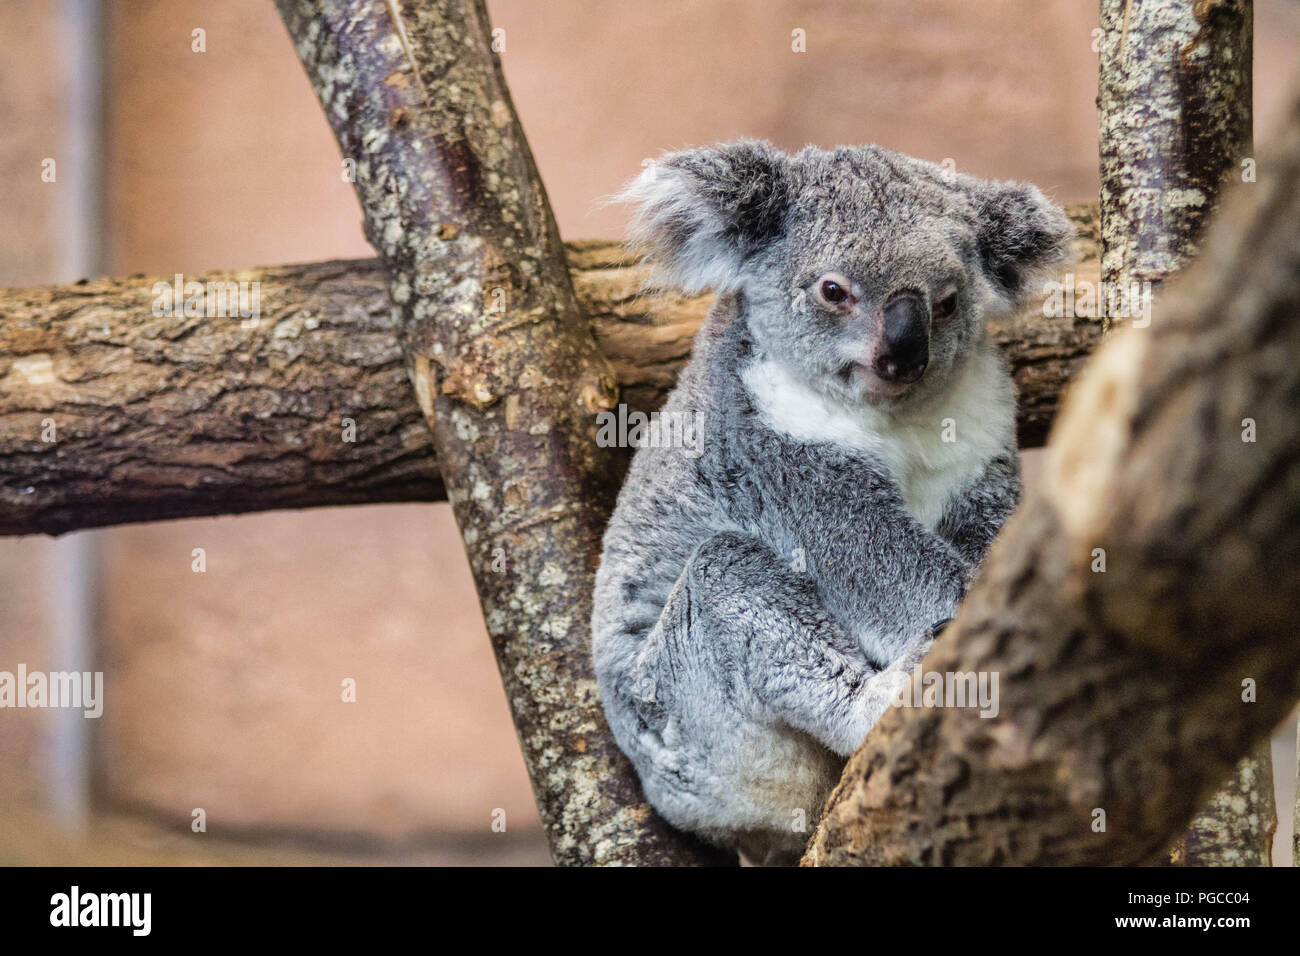 Le koala (Phascolarctos cinereus), appelé aussi Paresseux australien, est une espèce de marsupial arboricole herbivore endémique d'Australie et le seu Stock Photo